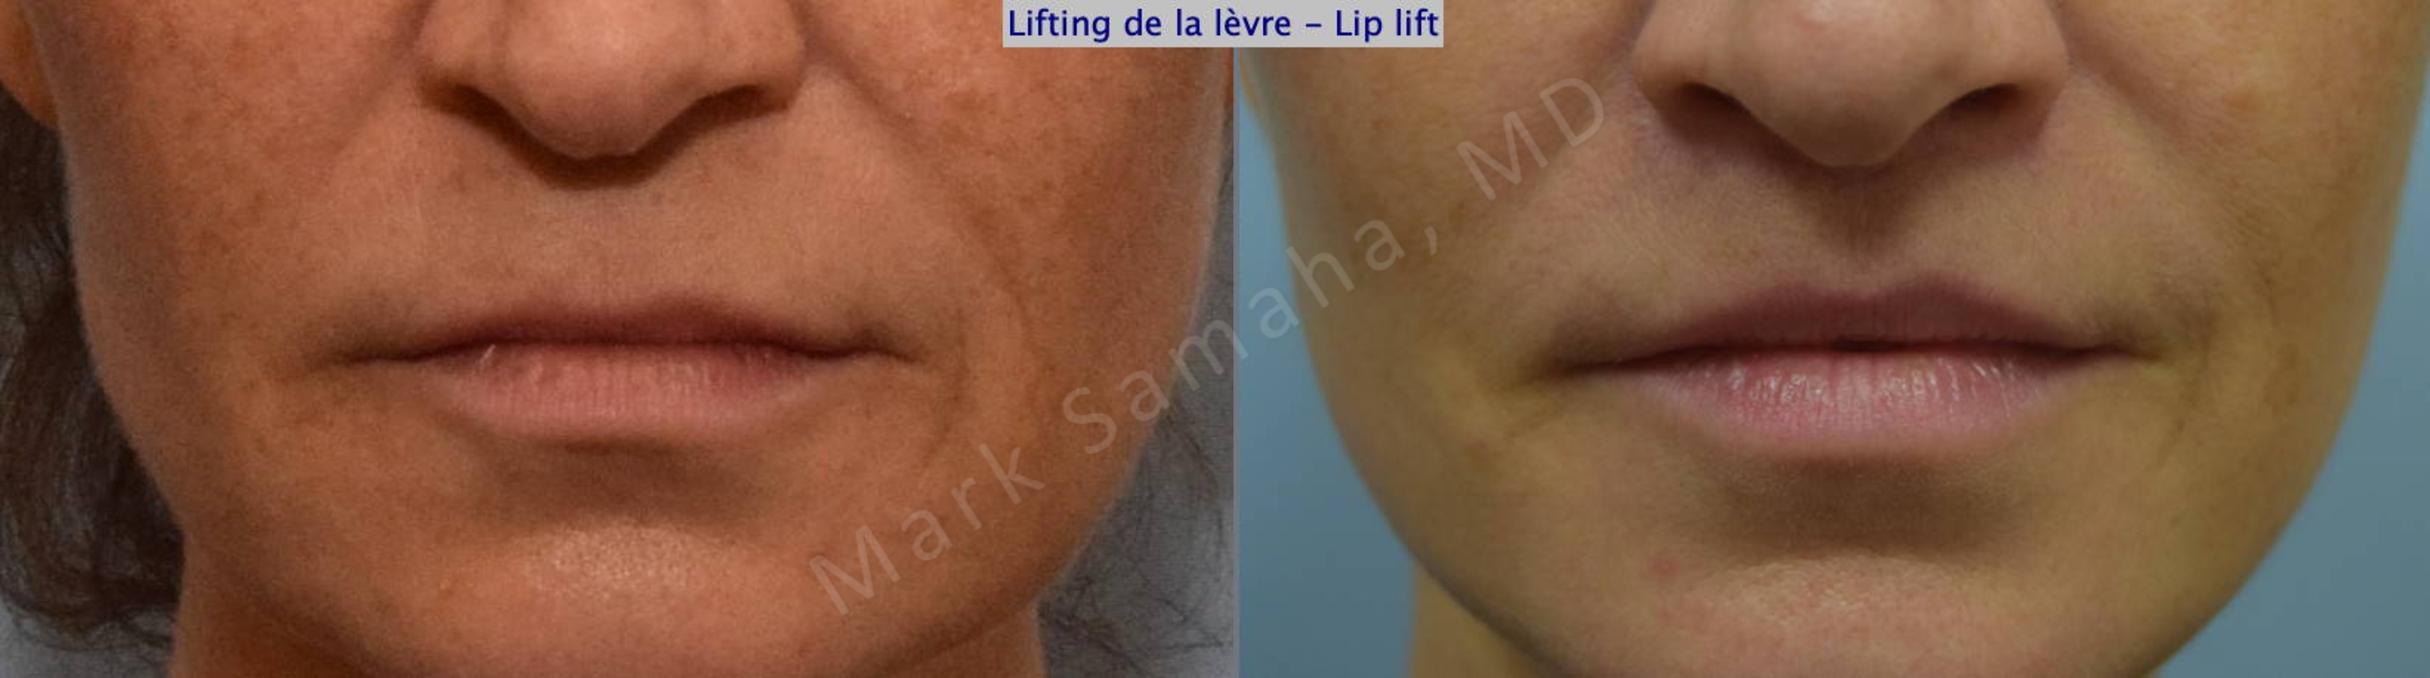 Before & After Lifting de la lèvre supérieure / Lip Lift  Case 131 View #1 View in Mount Royal, QC